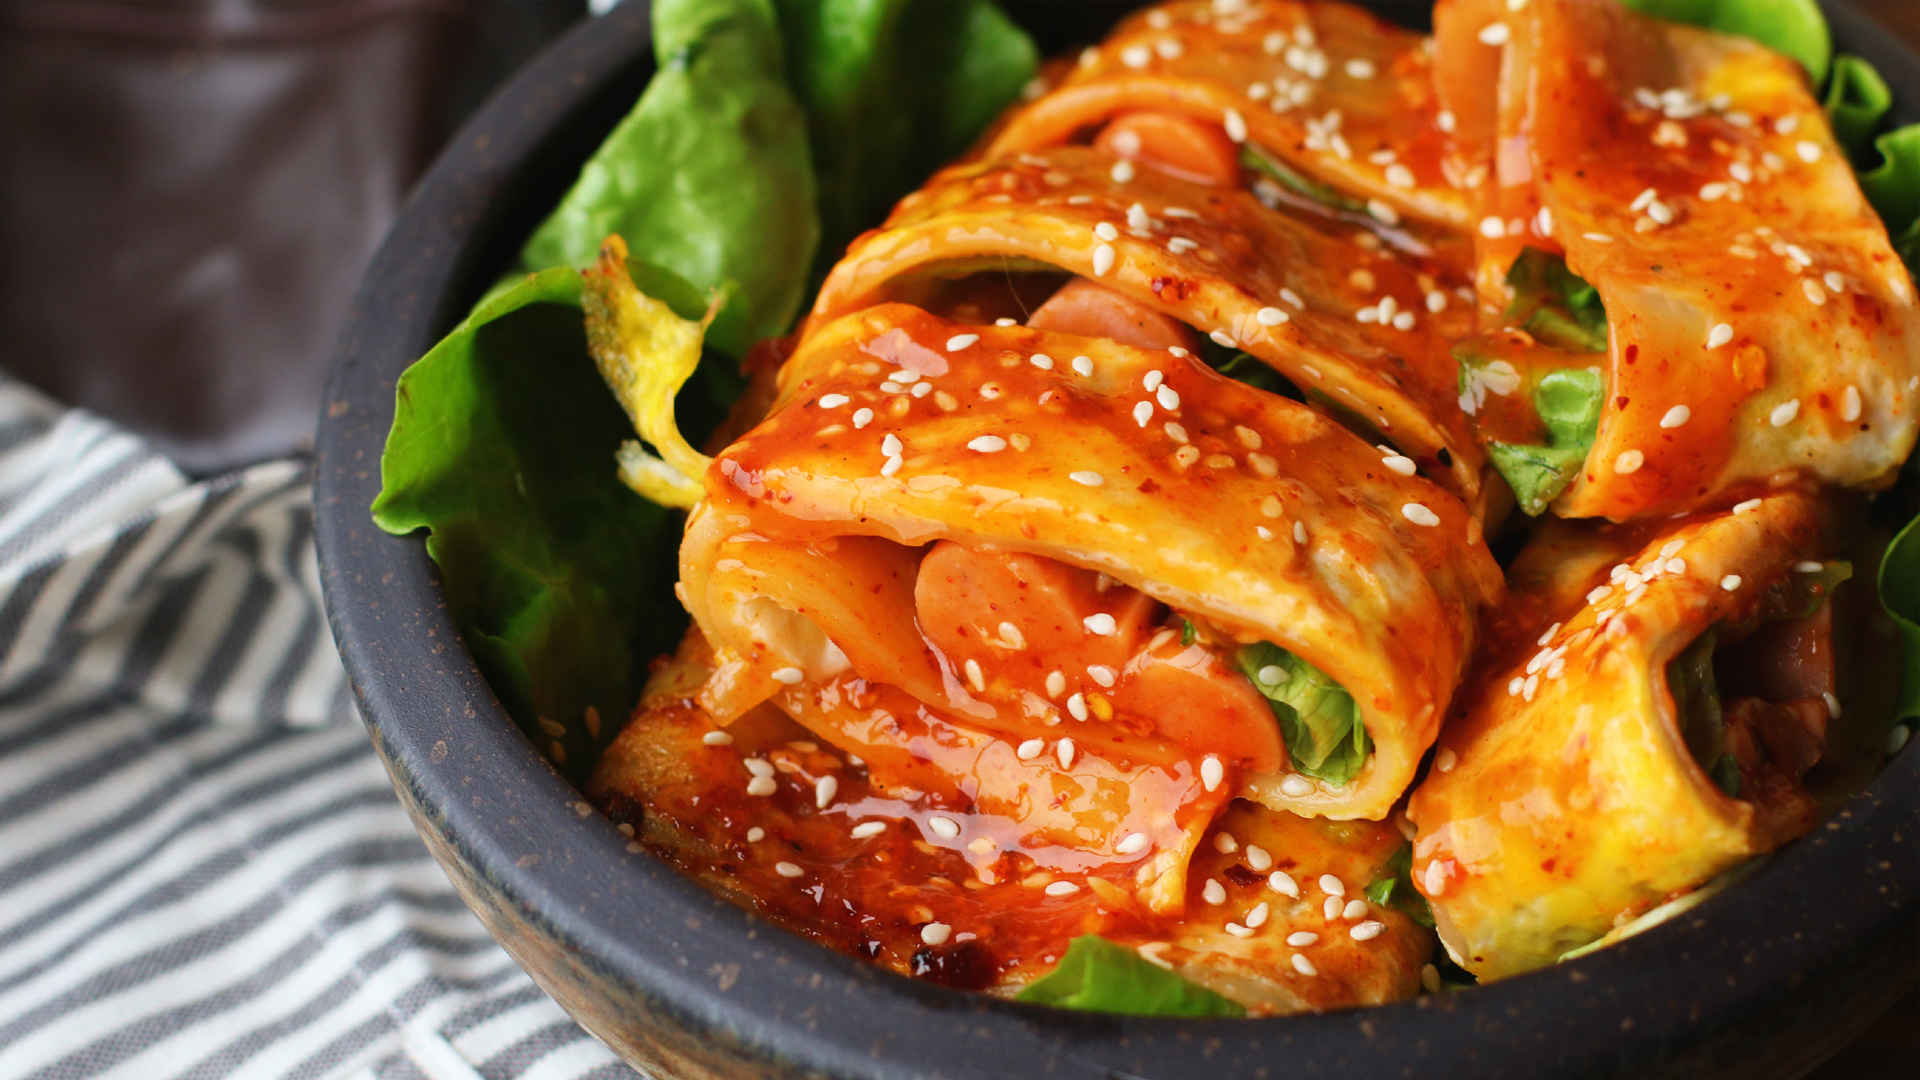 中國十大美食 中國最好吃的15種美食介紹 _中國最有名的特色菜 - 神拓網